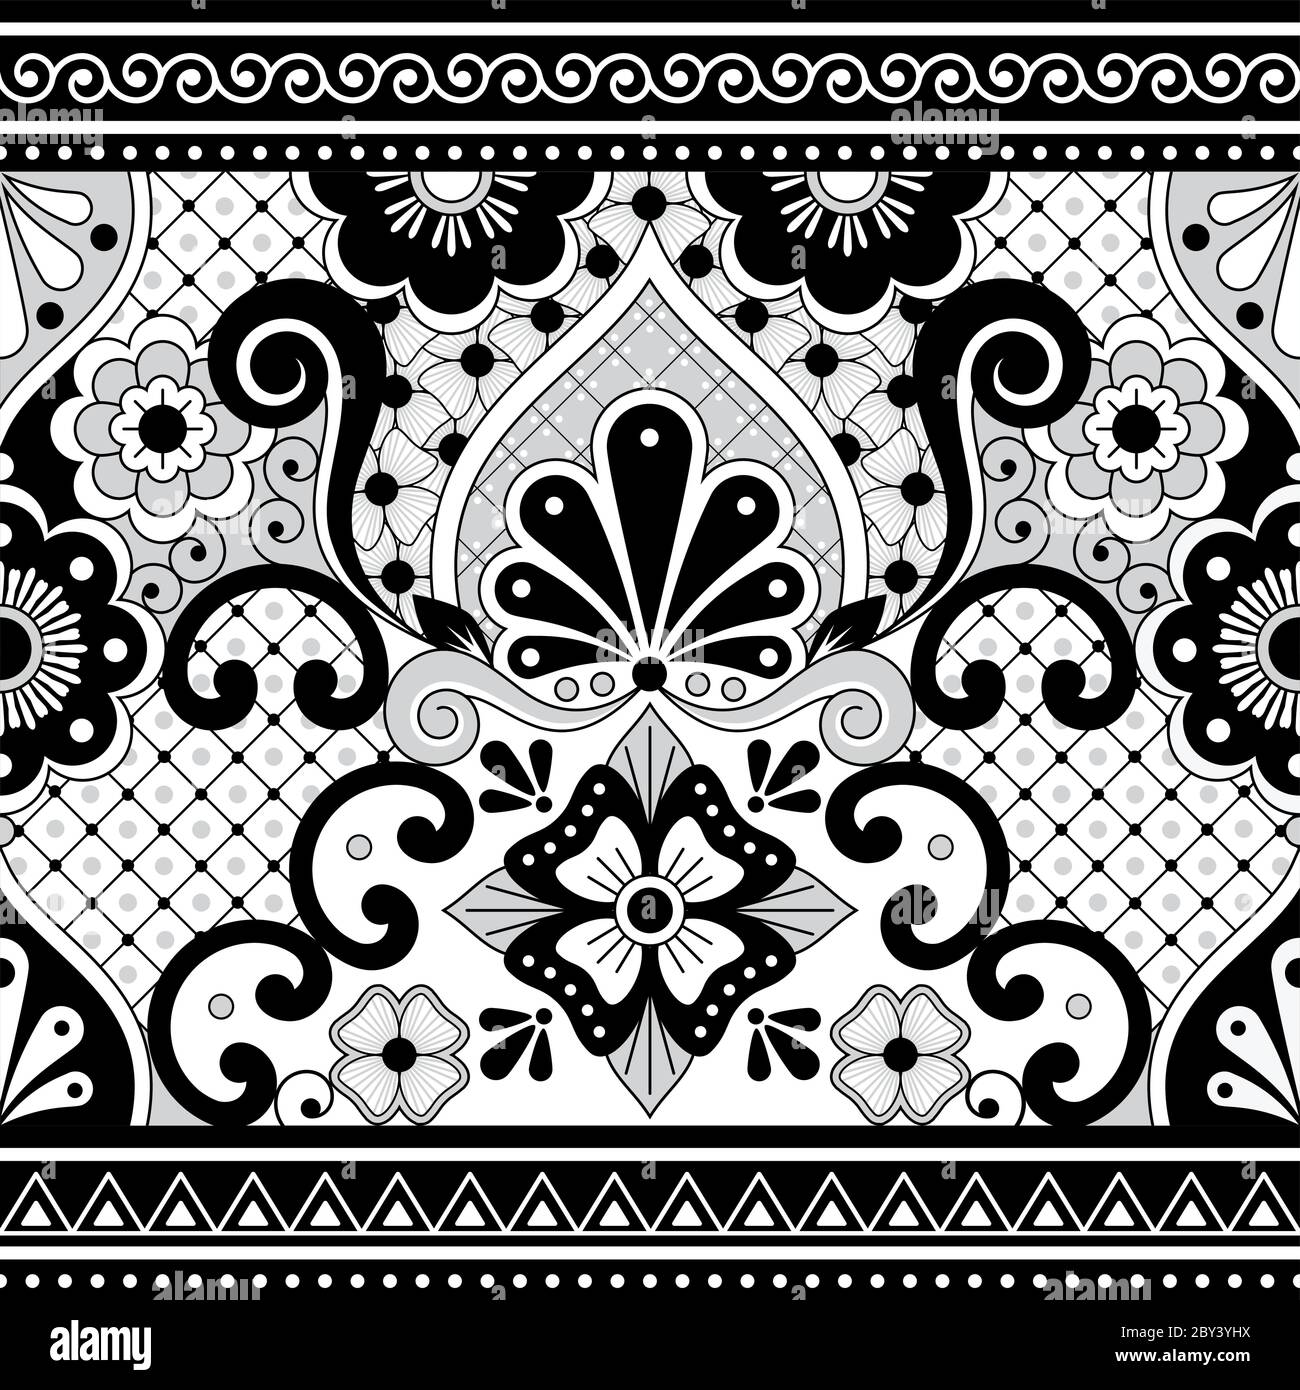 Mexikanische Talavera Poblana Vektor nahtlose Muster, repetitive Hintergrund inspiriert von traditionellen Keramik und Keramik-Design aus Mexiko in schwarz und w Stock Vektor